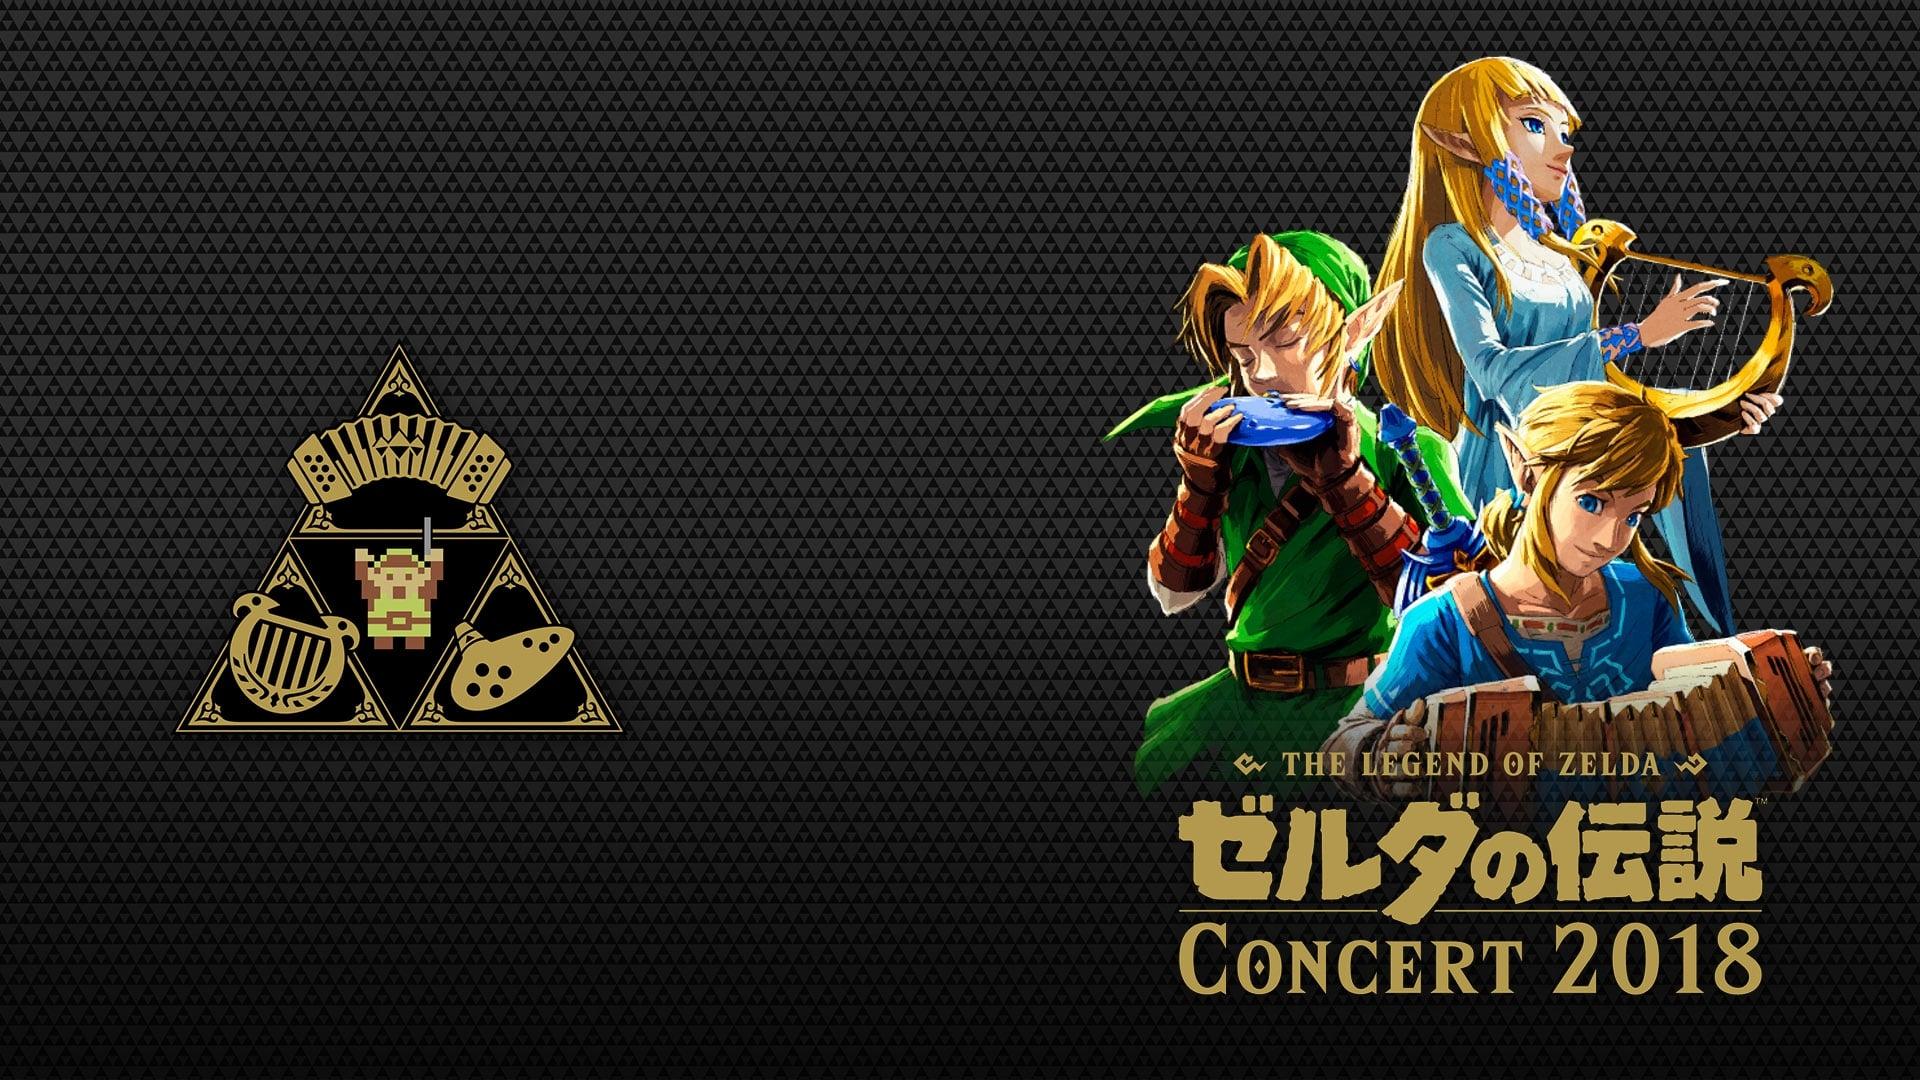 The Legend of Zelda Concert 2018 backdrop